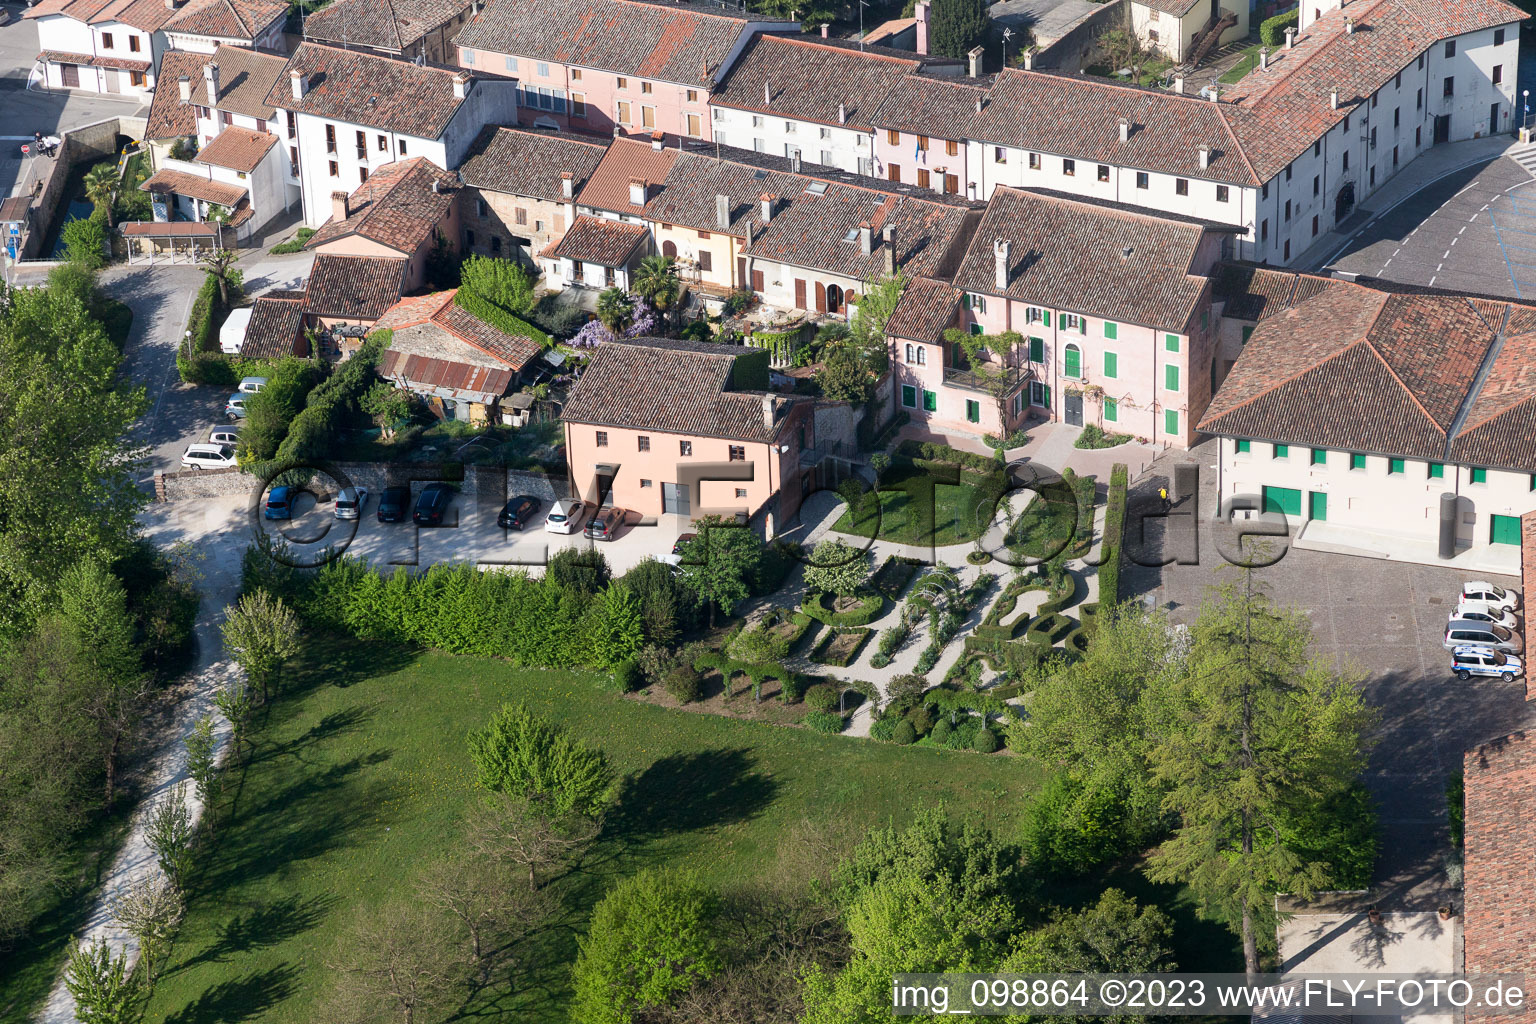 Aerial view of Sesto al Reghena in the state Friuli Venezia Giulia, Italy